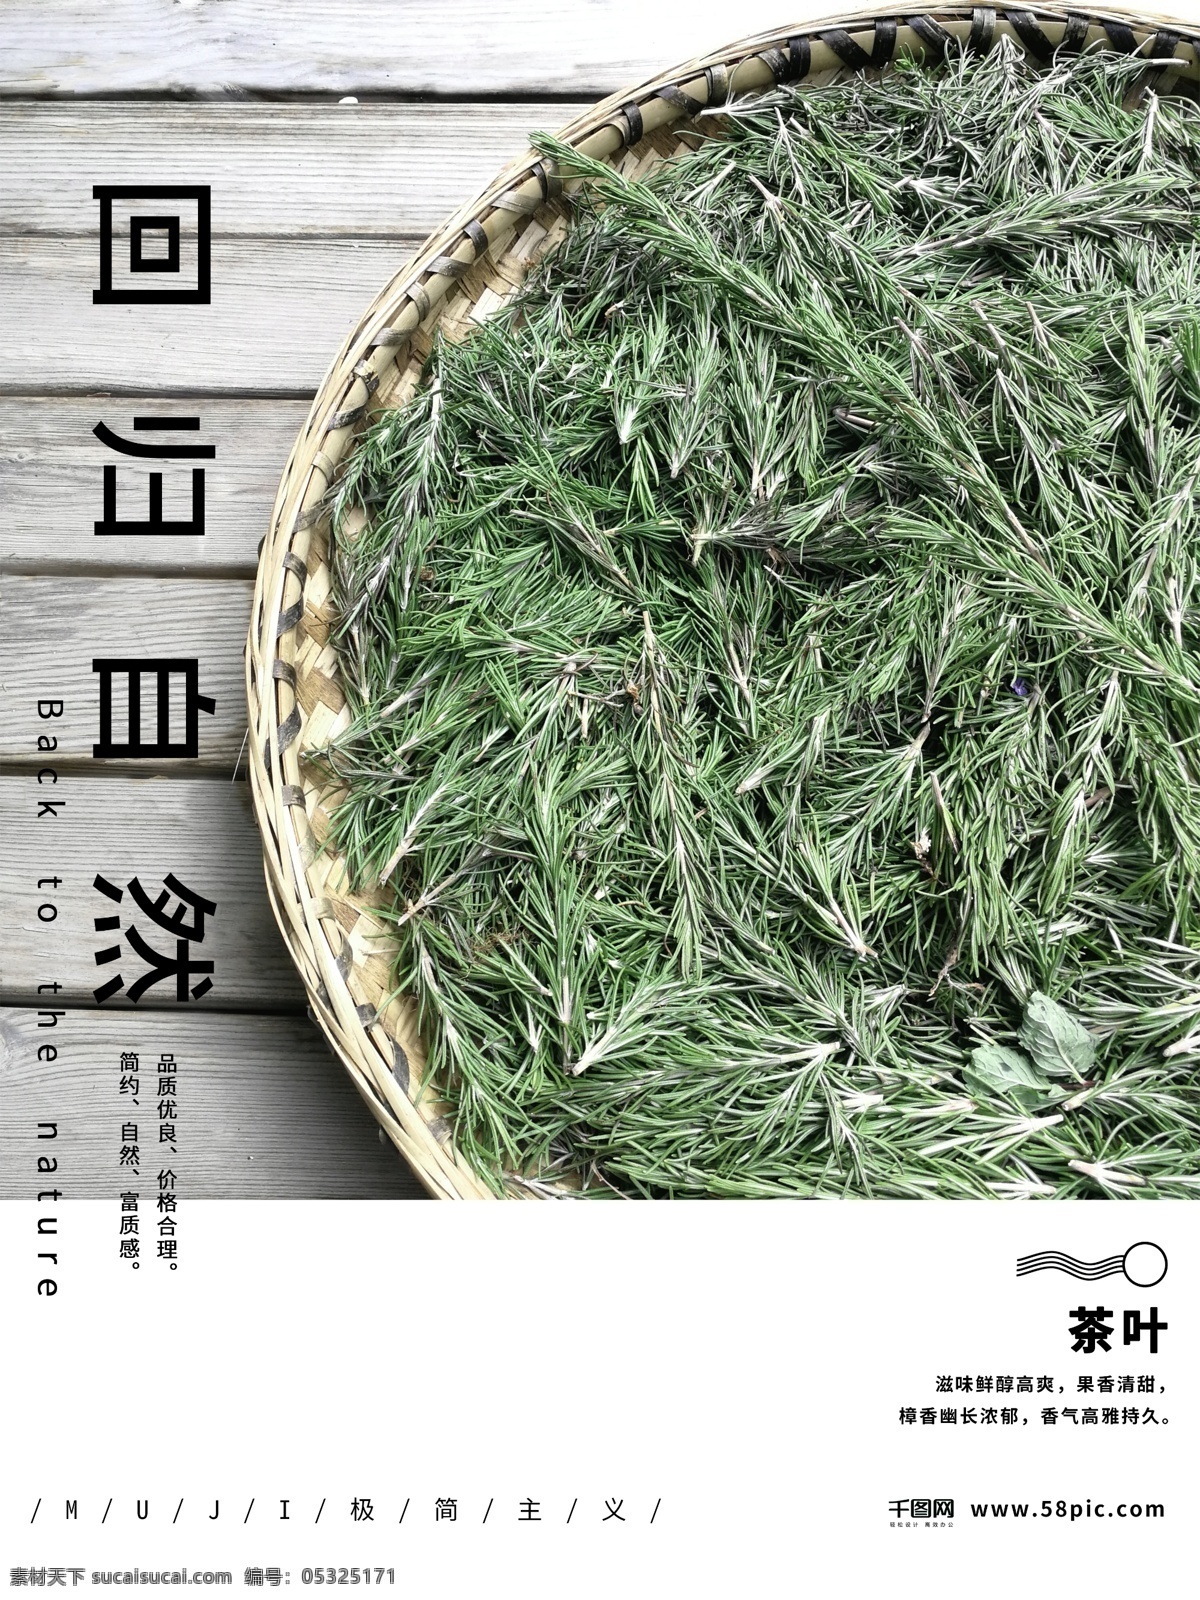 muji 风 极 简 主义 茶叶 商业 海报 简约 简洁 商业海报 极简主义 muji风